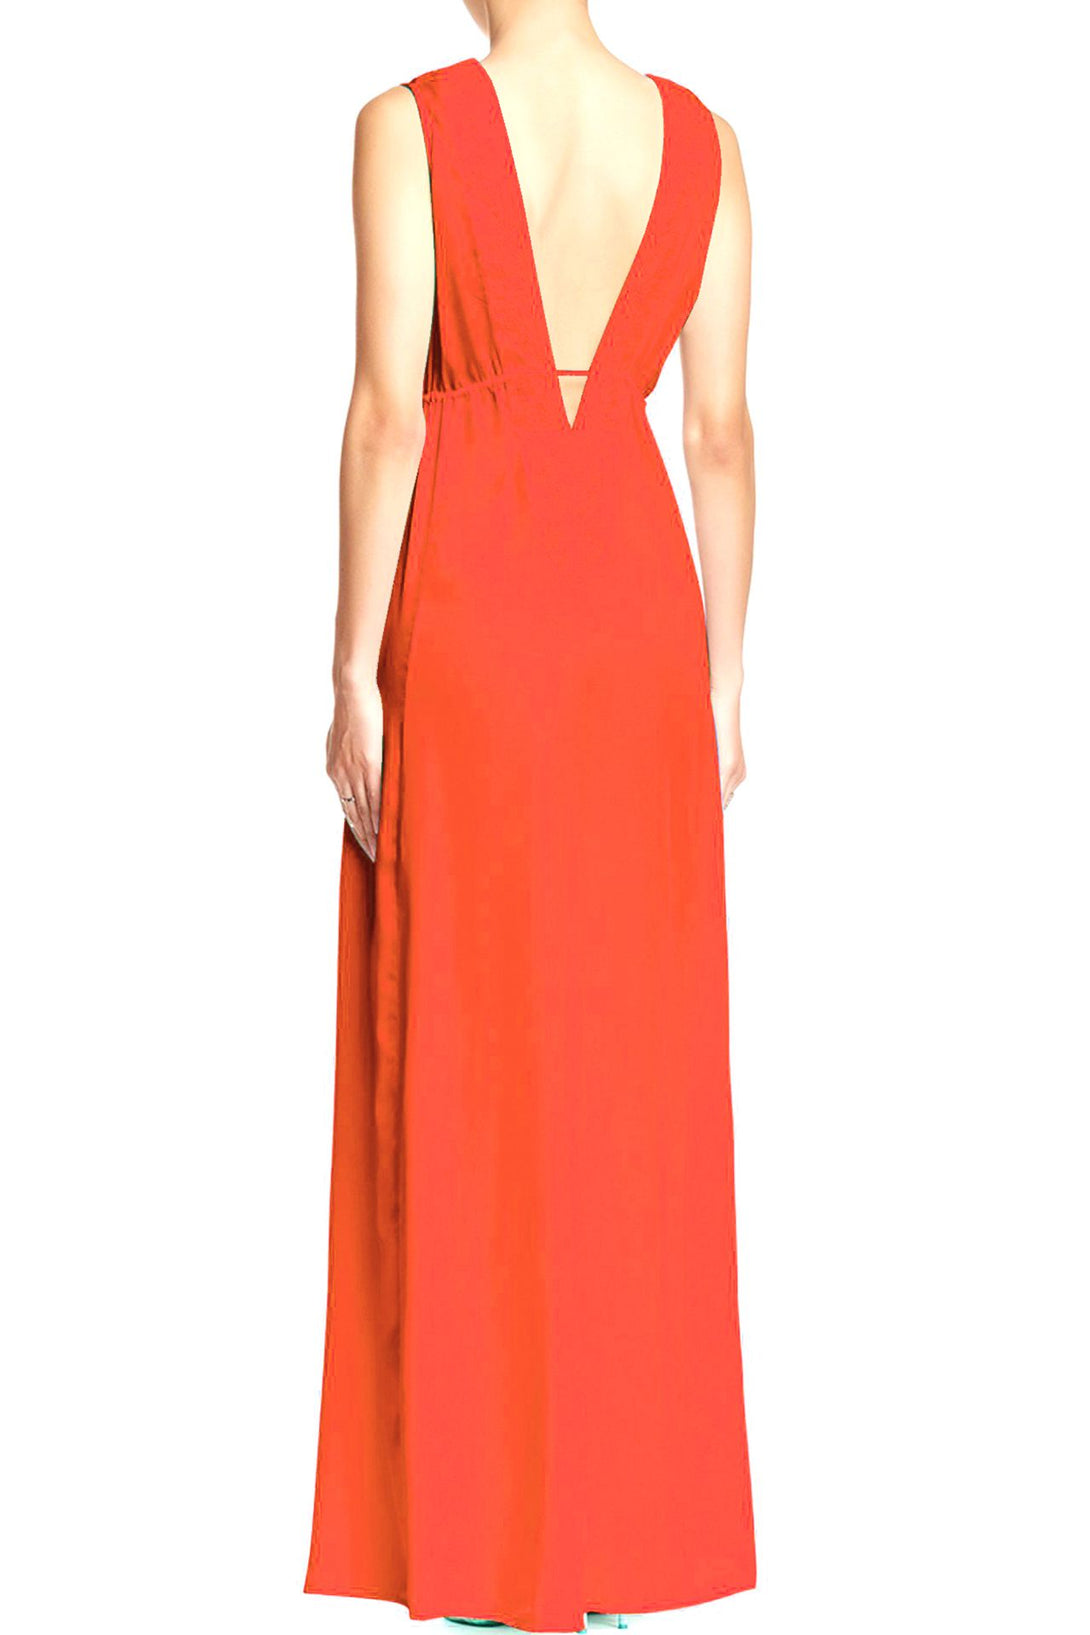  long formal orange dress, long summer dresses for women, plunge neck cocktail dress,